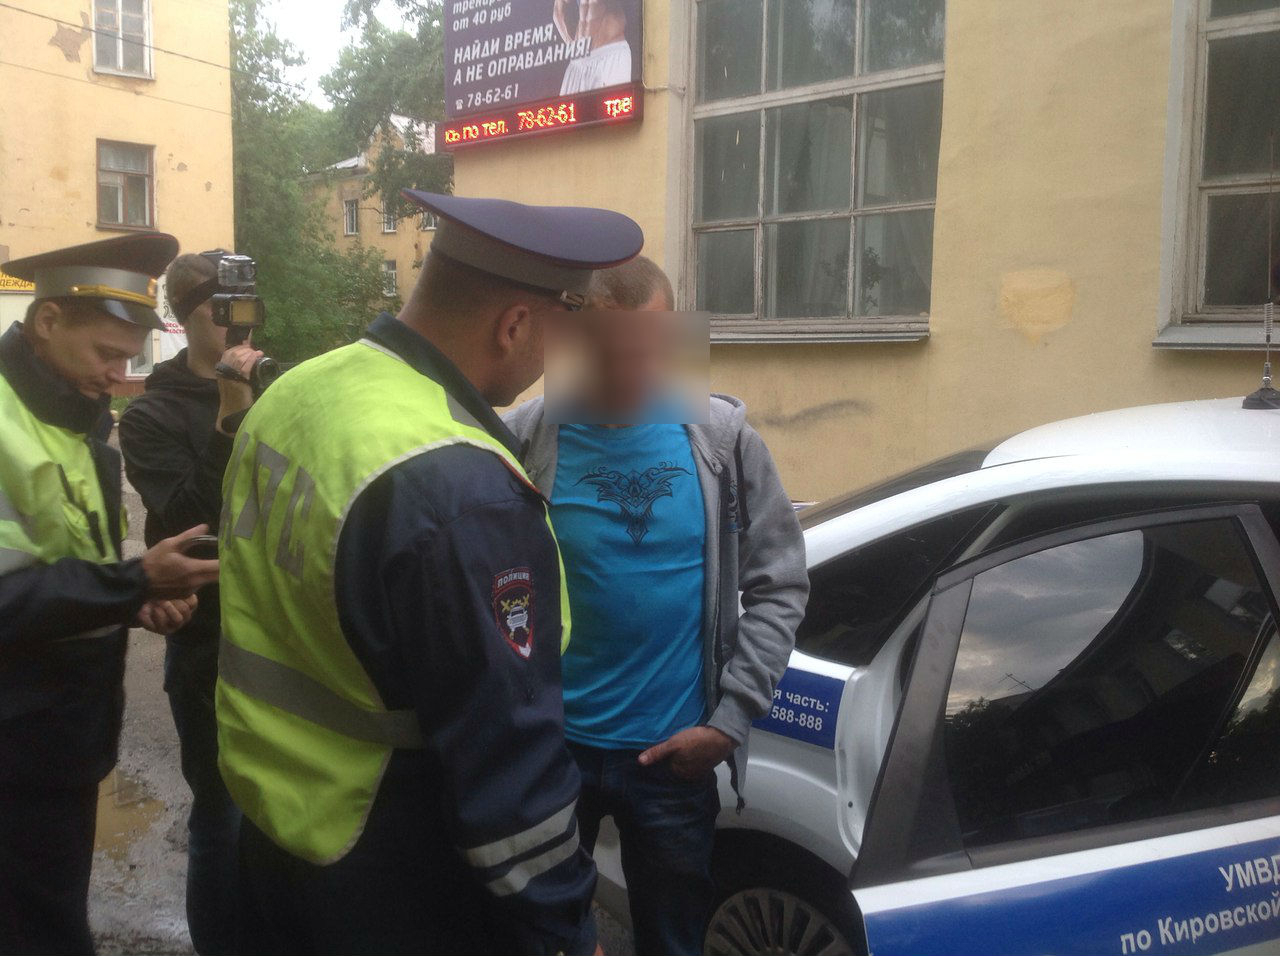 6 громких задержаний, связанных с работой "Ночного патруля" в Кирове